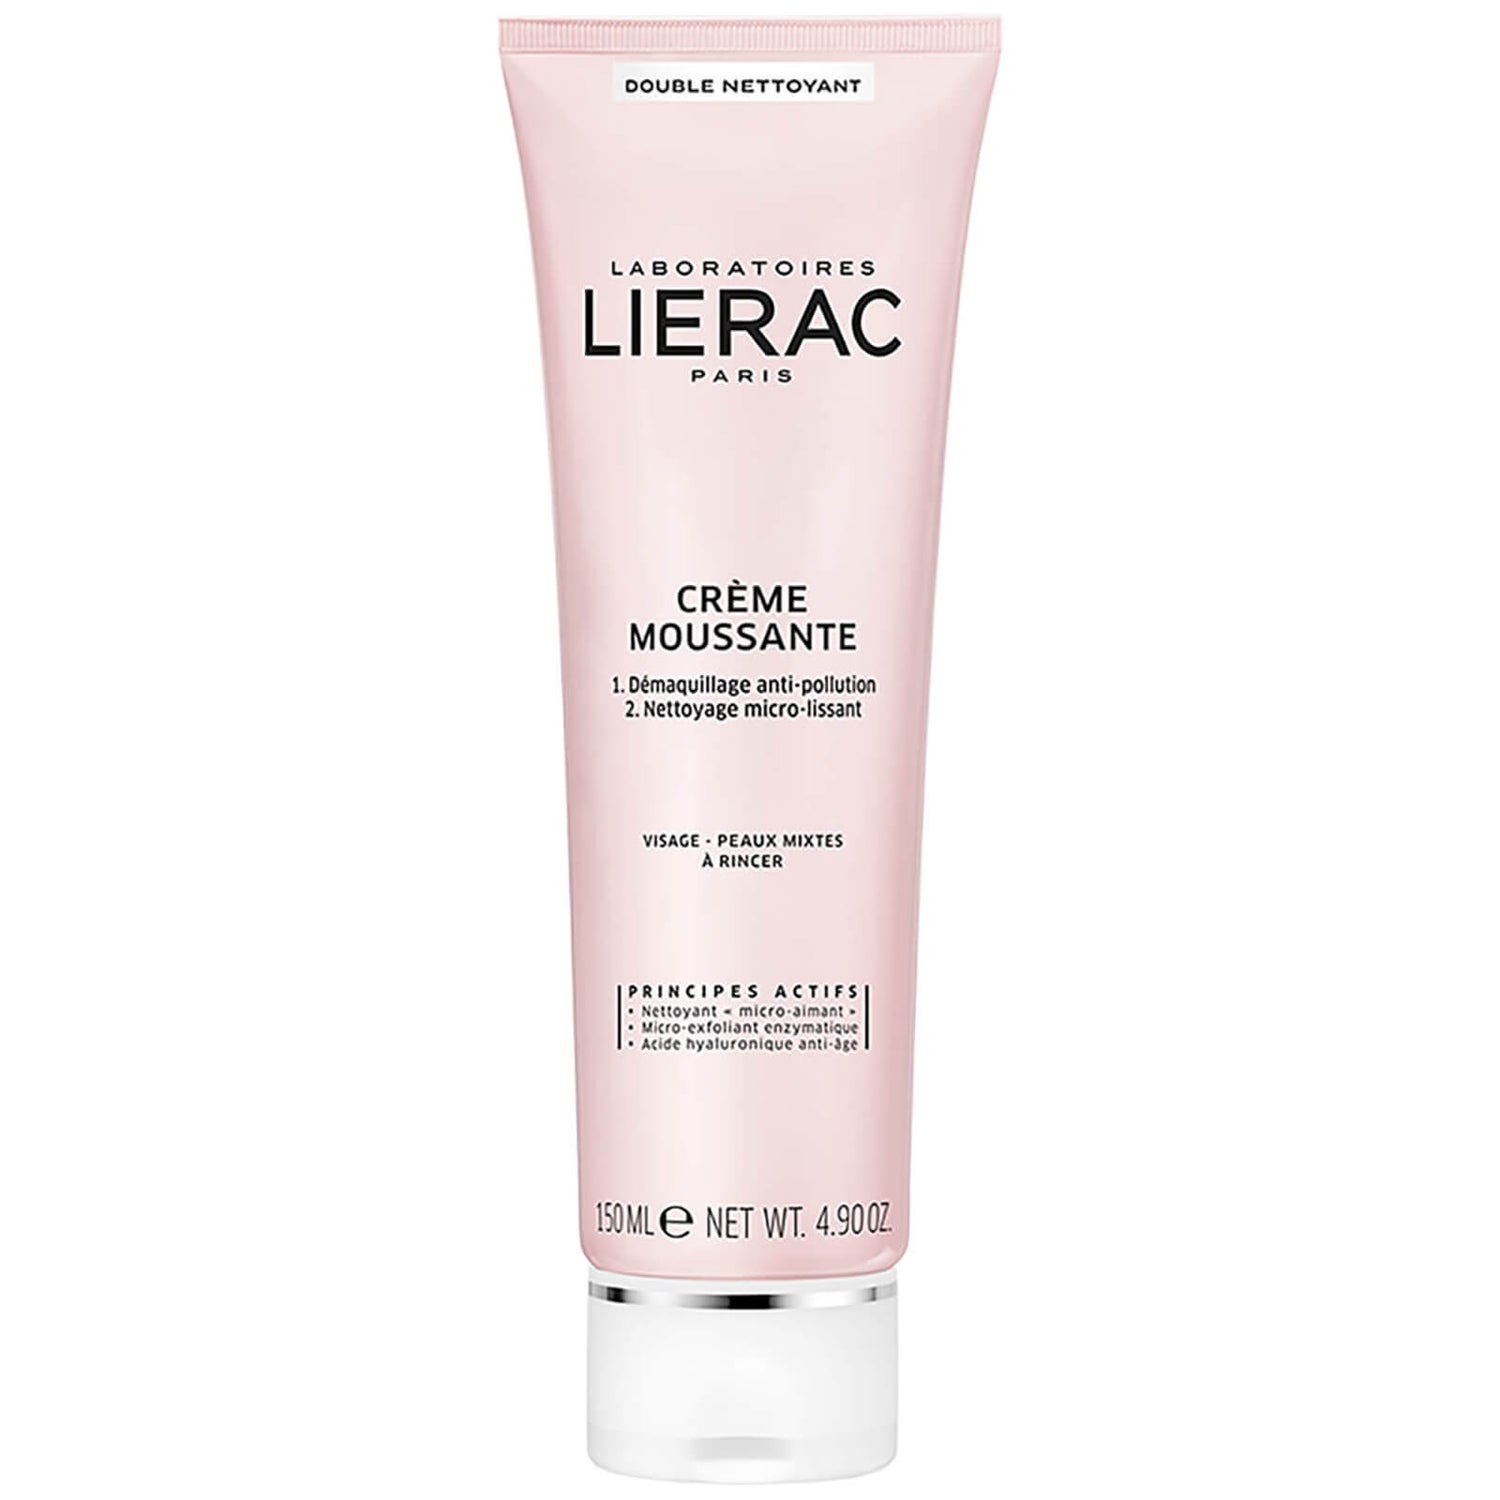 Lierac Double Cleanser Cream-in-Foam(리에락 더블 클렌저 크림 인 폼)